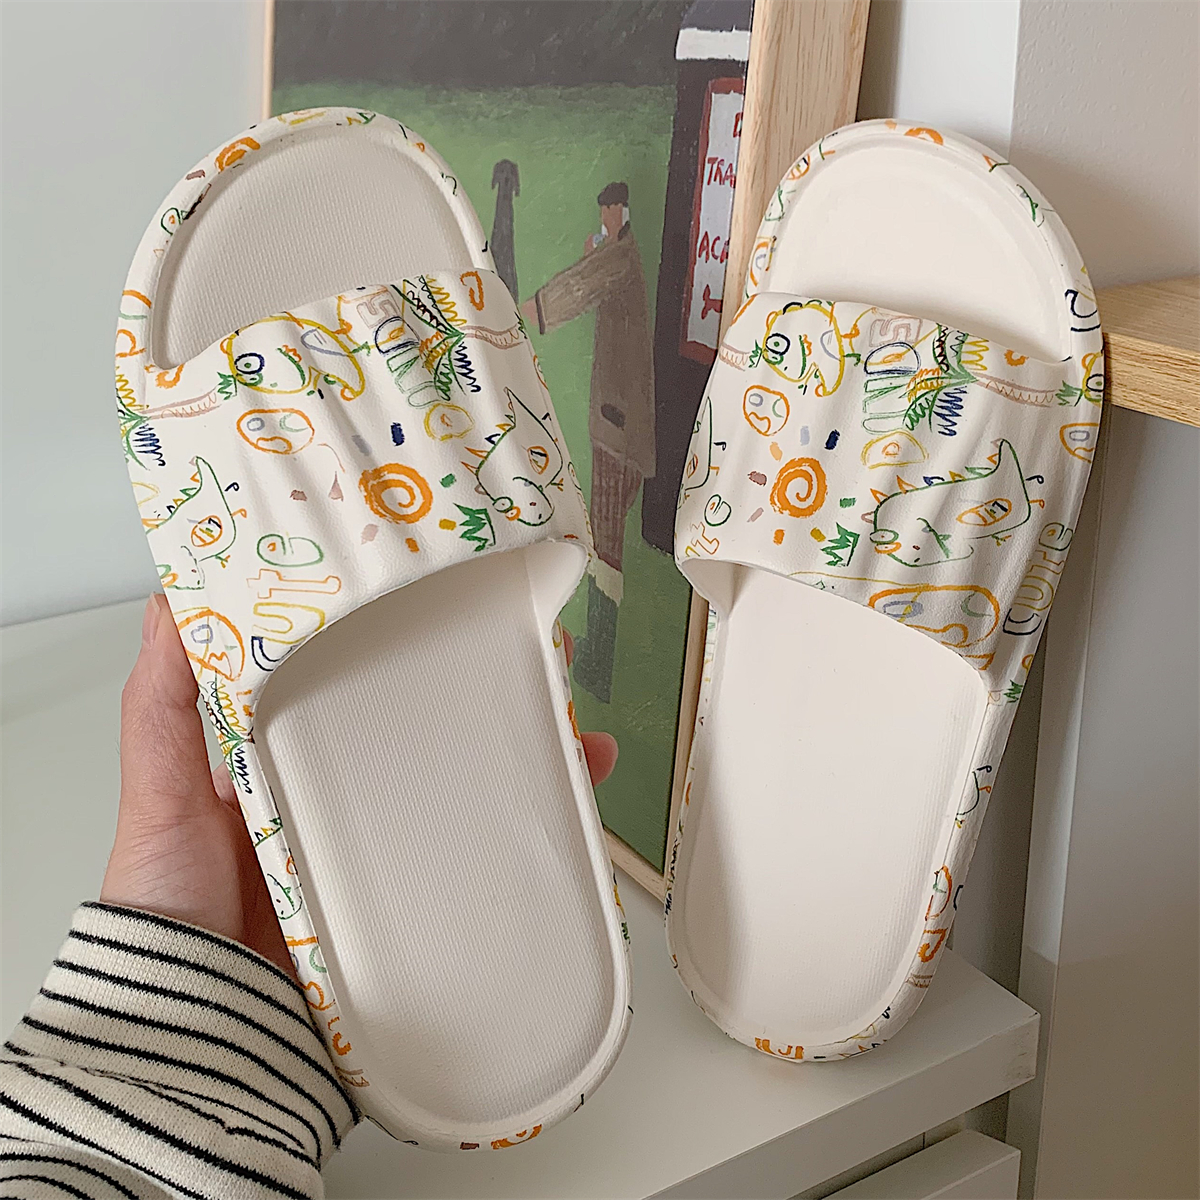 学生居家防滑防臭eva浴室拖鞋夏季新款韩版可爱童趣涂鸦凉拖鞋女 - 图3